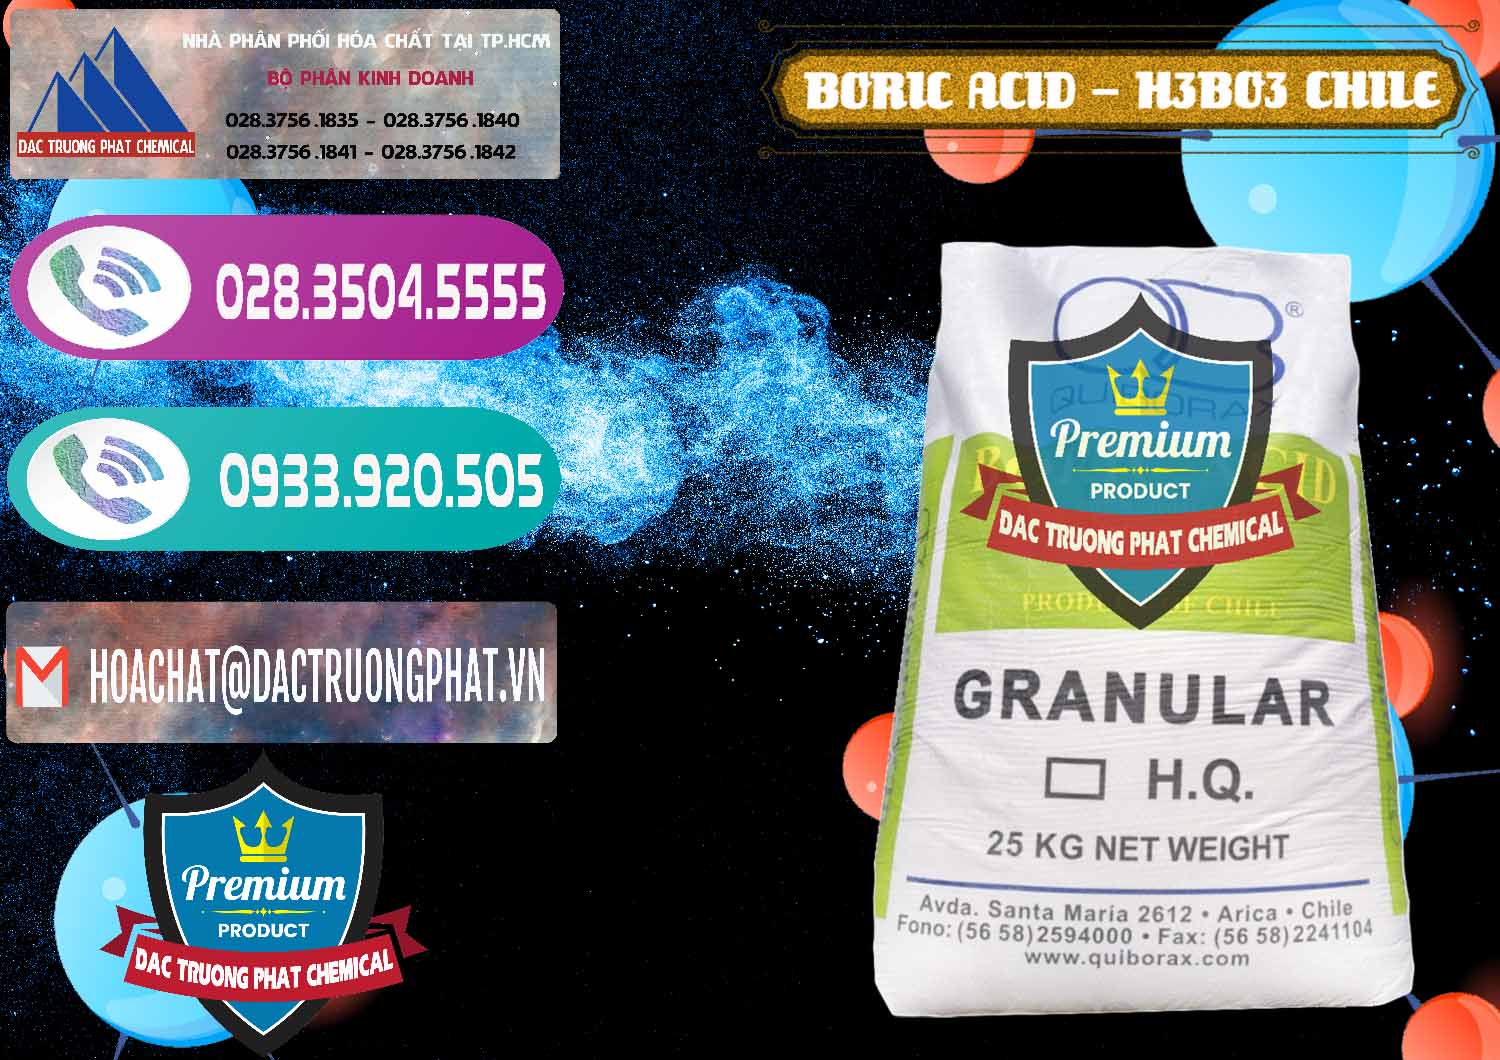 Công ty chuyên bán - cung cấp Acid Boric – Axit Boric H3BO3 99% Quiborax Chile - 0281 - Nhà nhập khẩu _ cung cấp hóa chất tại TP.HCM - hoachatxulynuoc.com